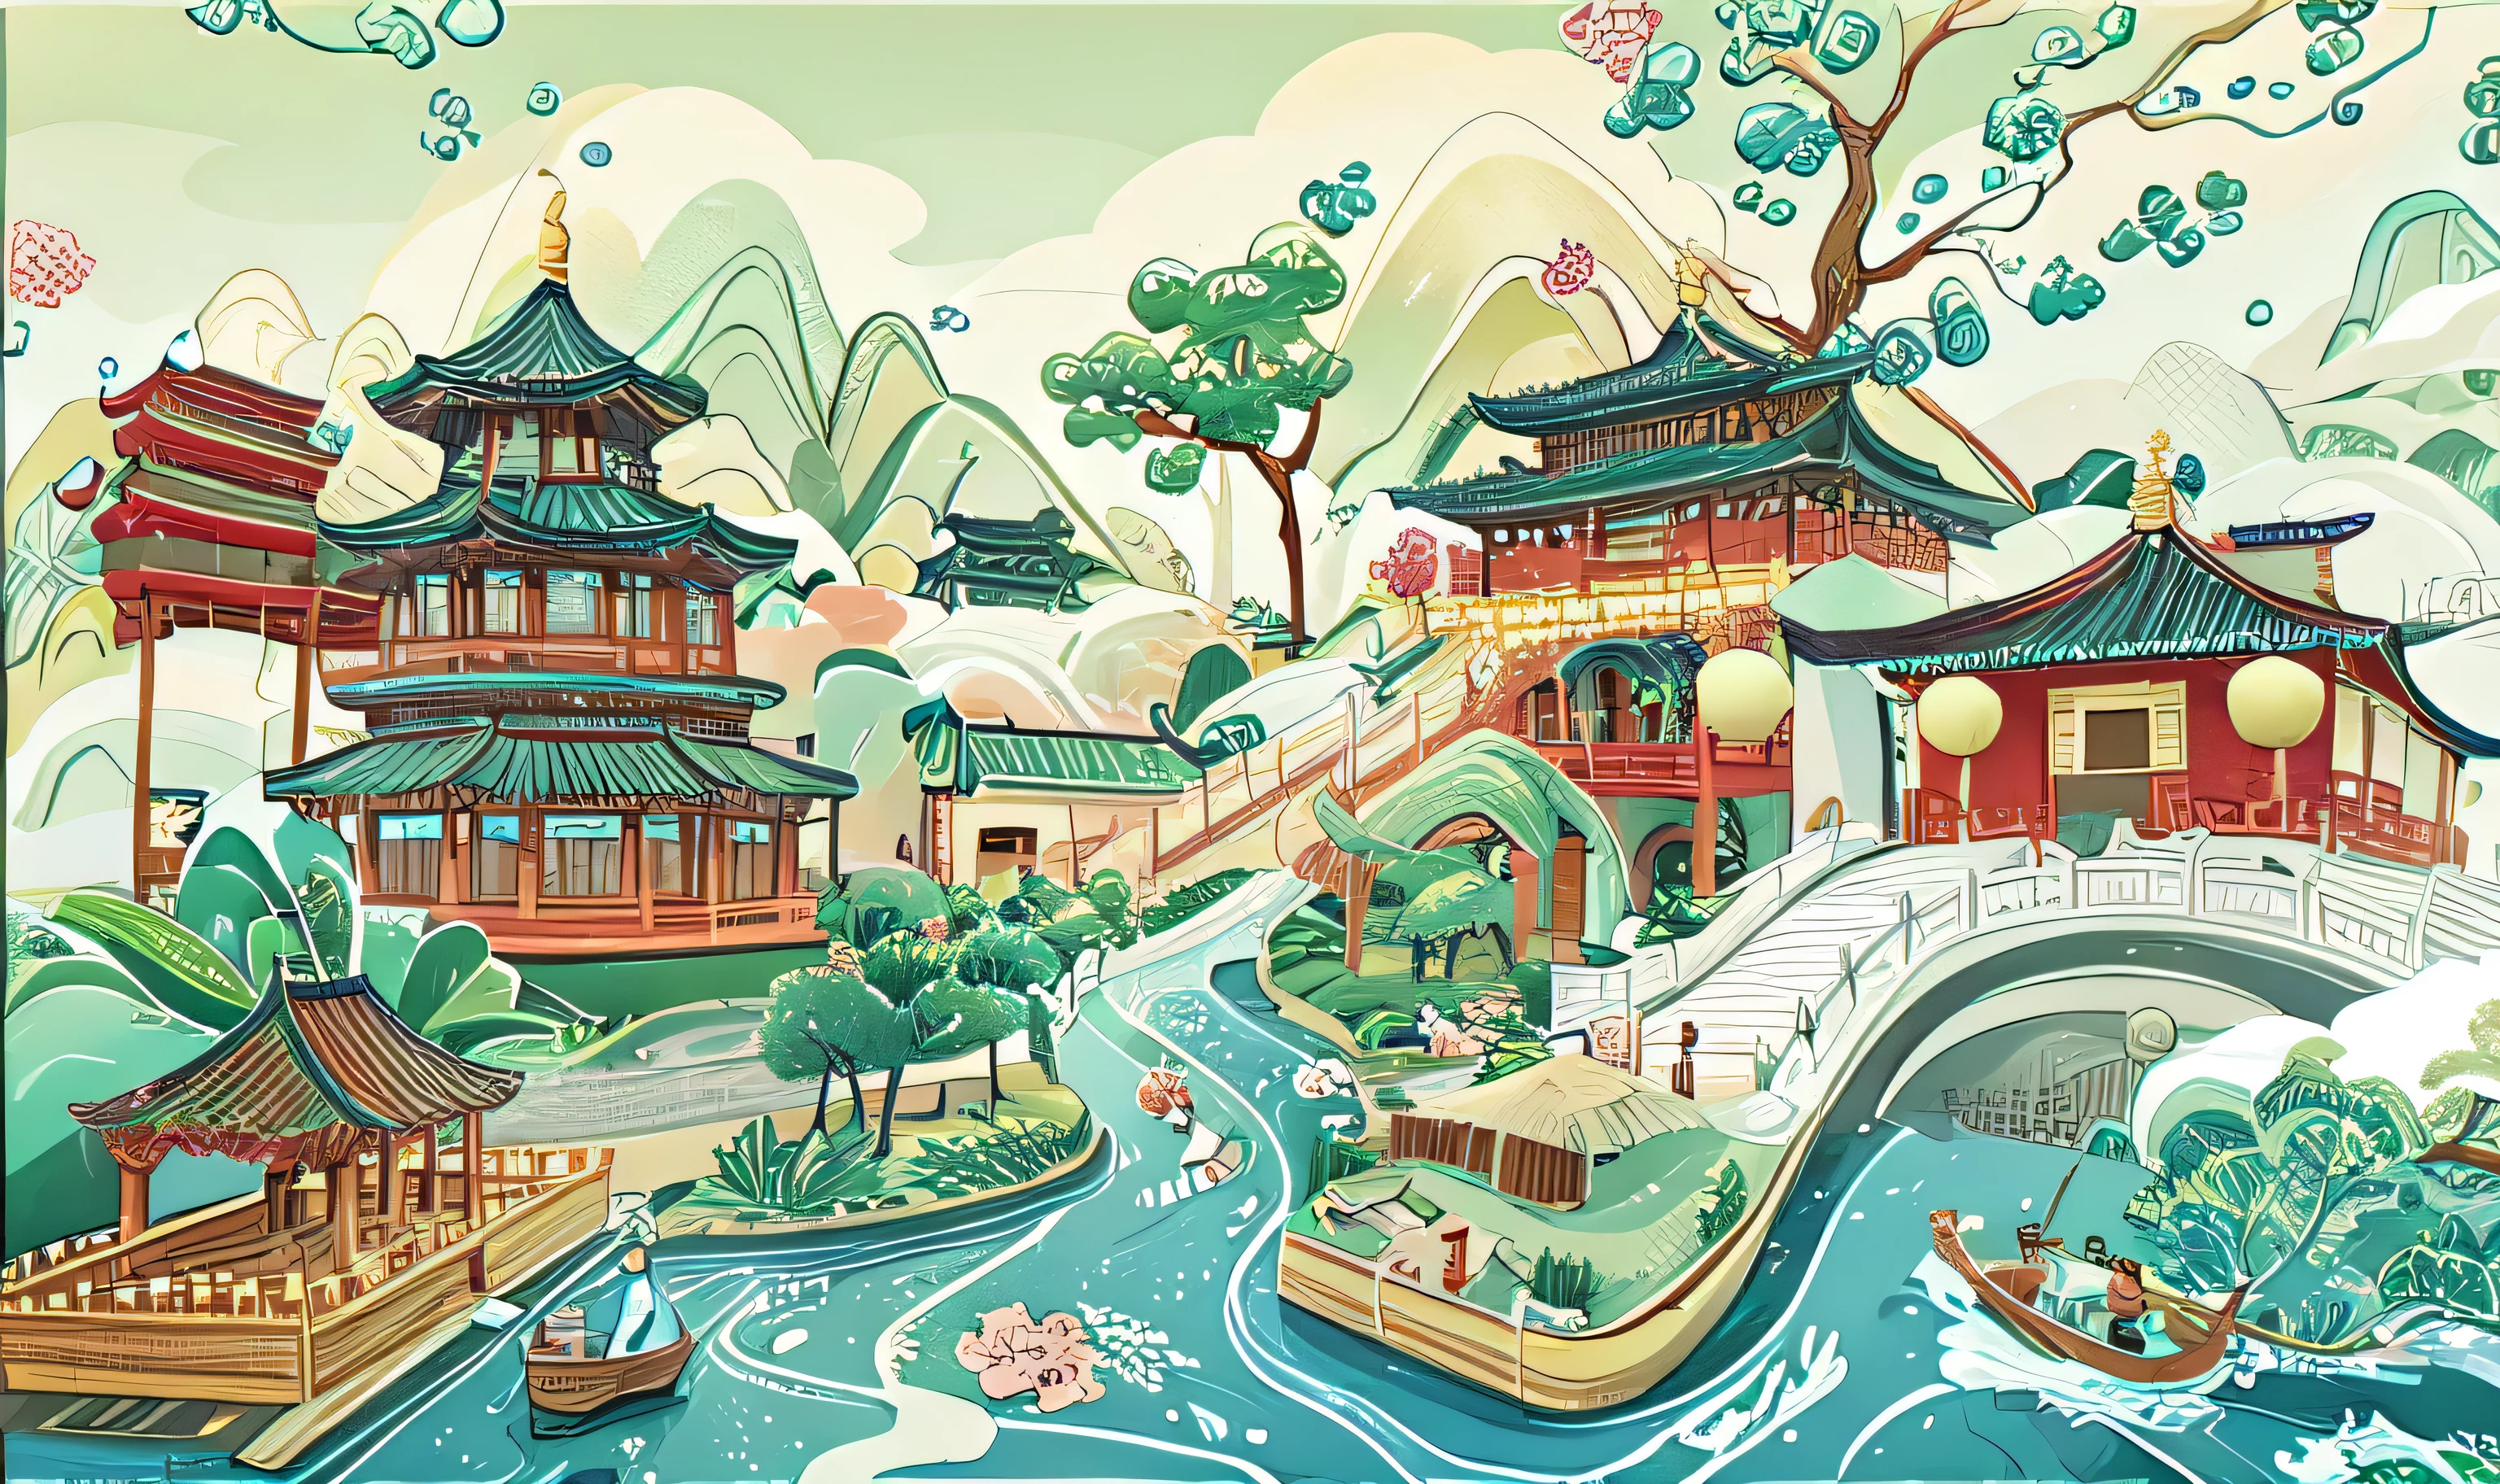 رسم توضيحي للقرية الصينية مع الجسر والقوارب, أسلوب الفن الصيني القديم, الاداءات الرائعة لأسرة تانغ, التوضيح الفني الجميل, مدينة الأحلام الصينية, نمط صيني, أسلوب الرسم الصيني, منظر طبيعي تفصيلي - العرض 672, نمط الألوان المائية الصينية, عمل فني للمناظر الطبيعية, بواسطة رن رينفا, الفن الصيني التقليدي, تمشيا مع الجماليات الصينية القديمة, بواسطة يان هوي，السفن التي تنقل الشاي，المزيد من عناصر الشاي。